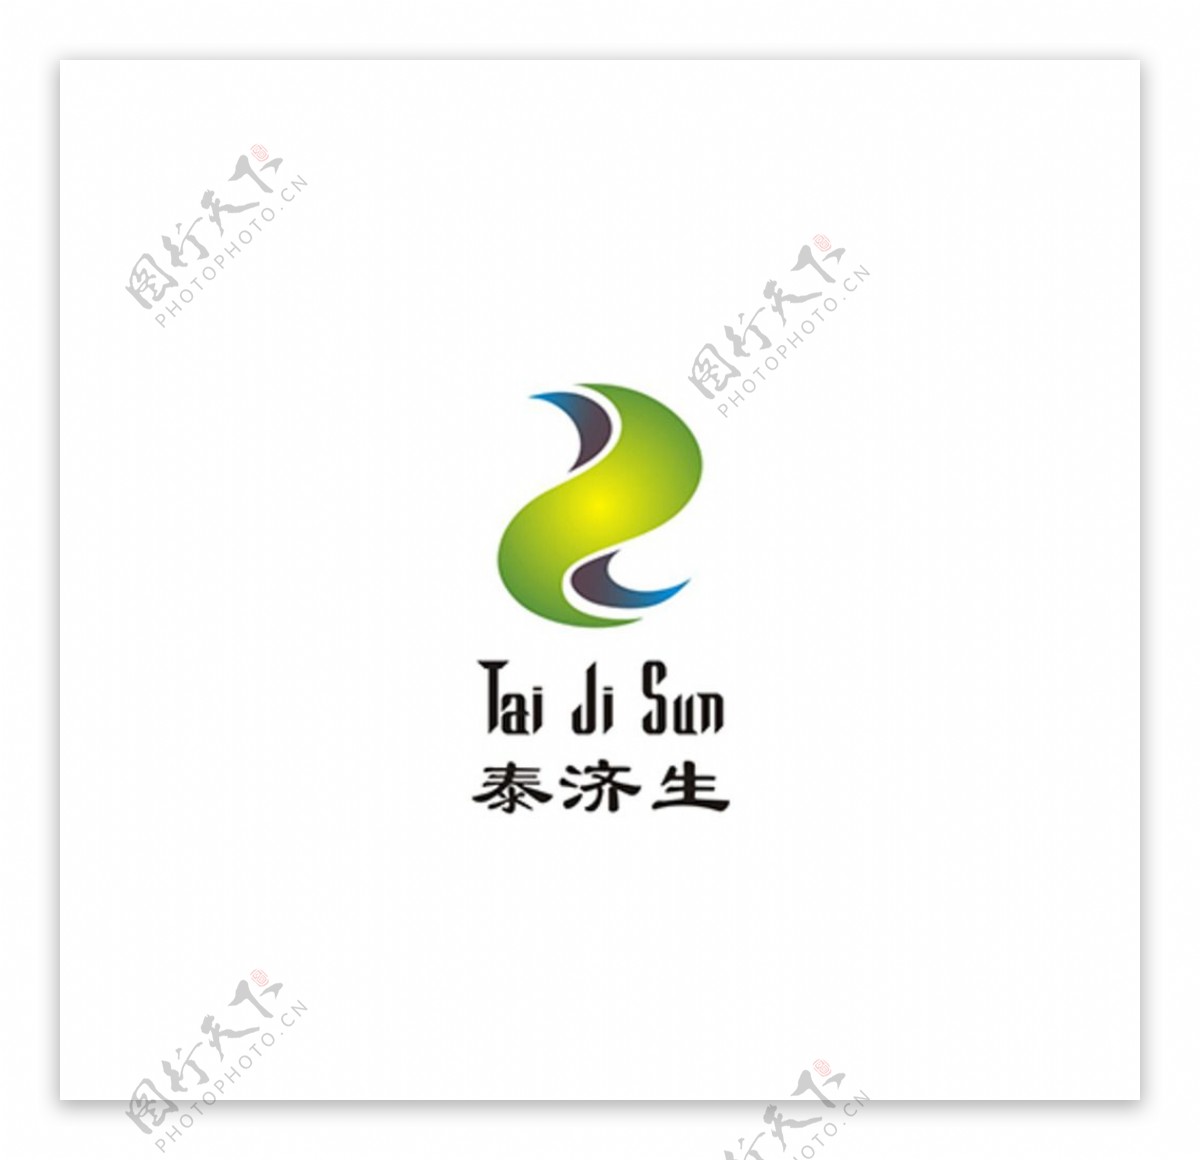 泰济生logo